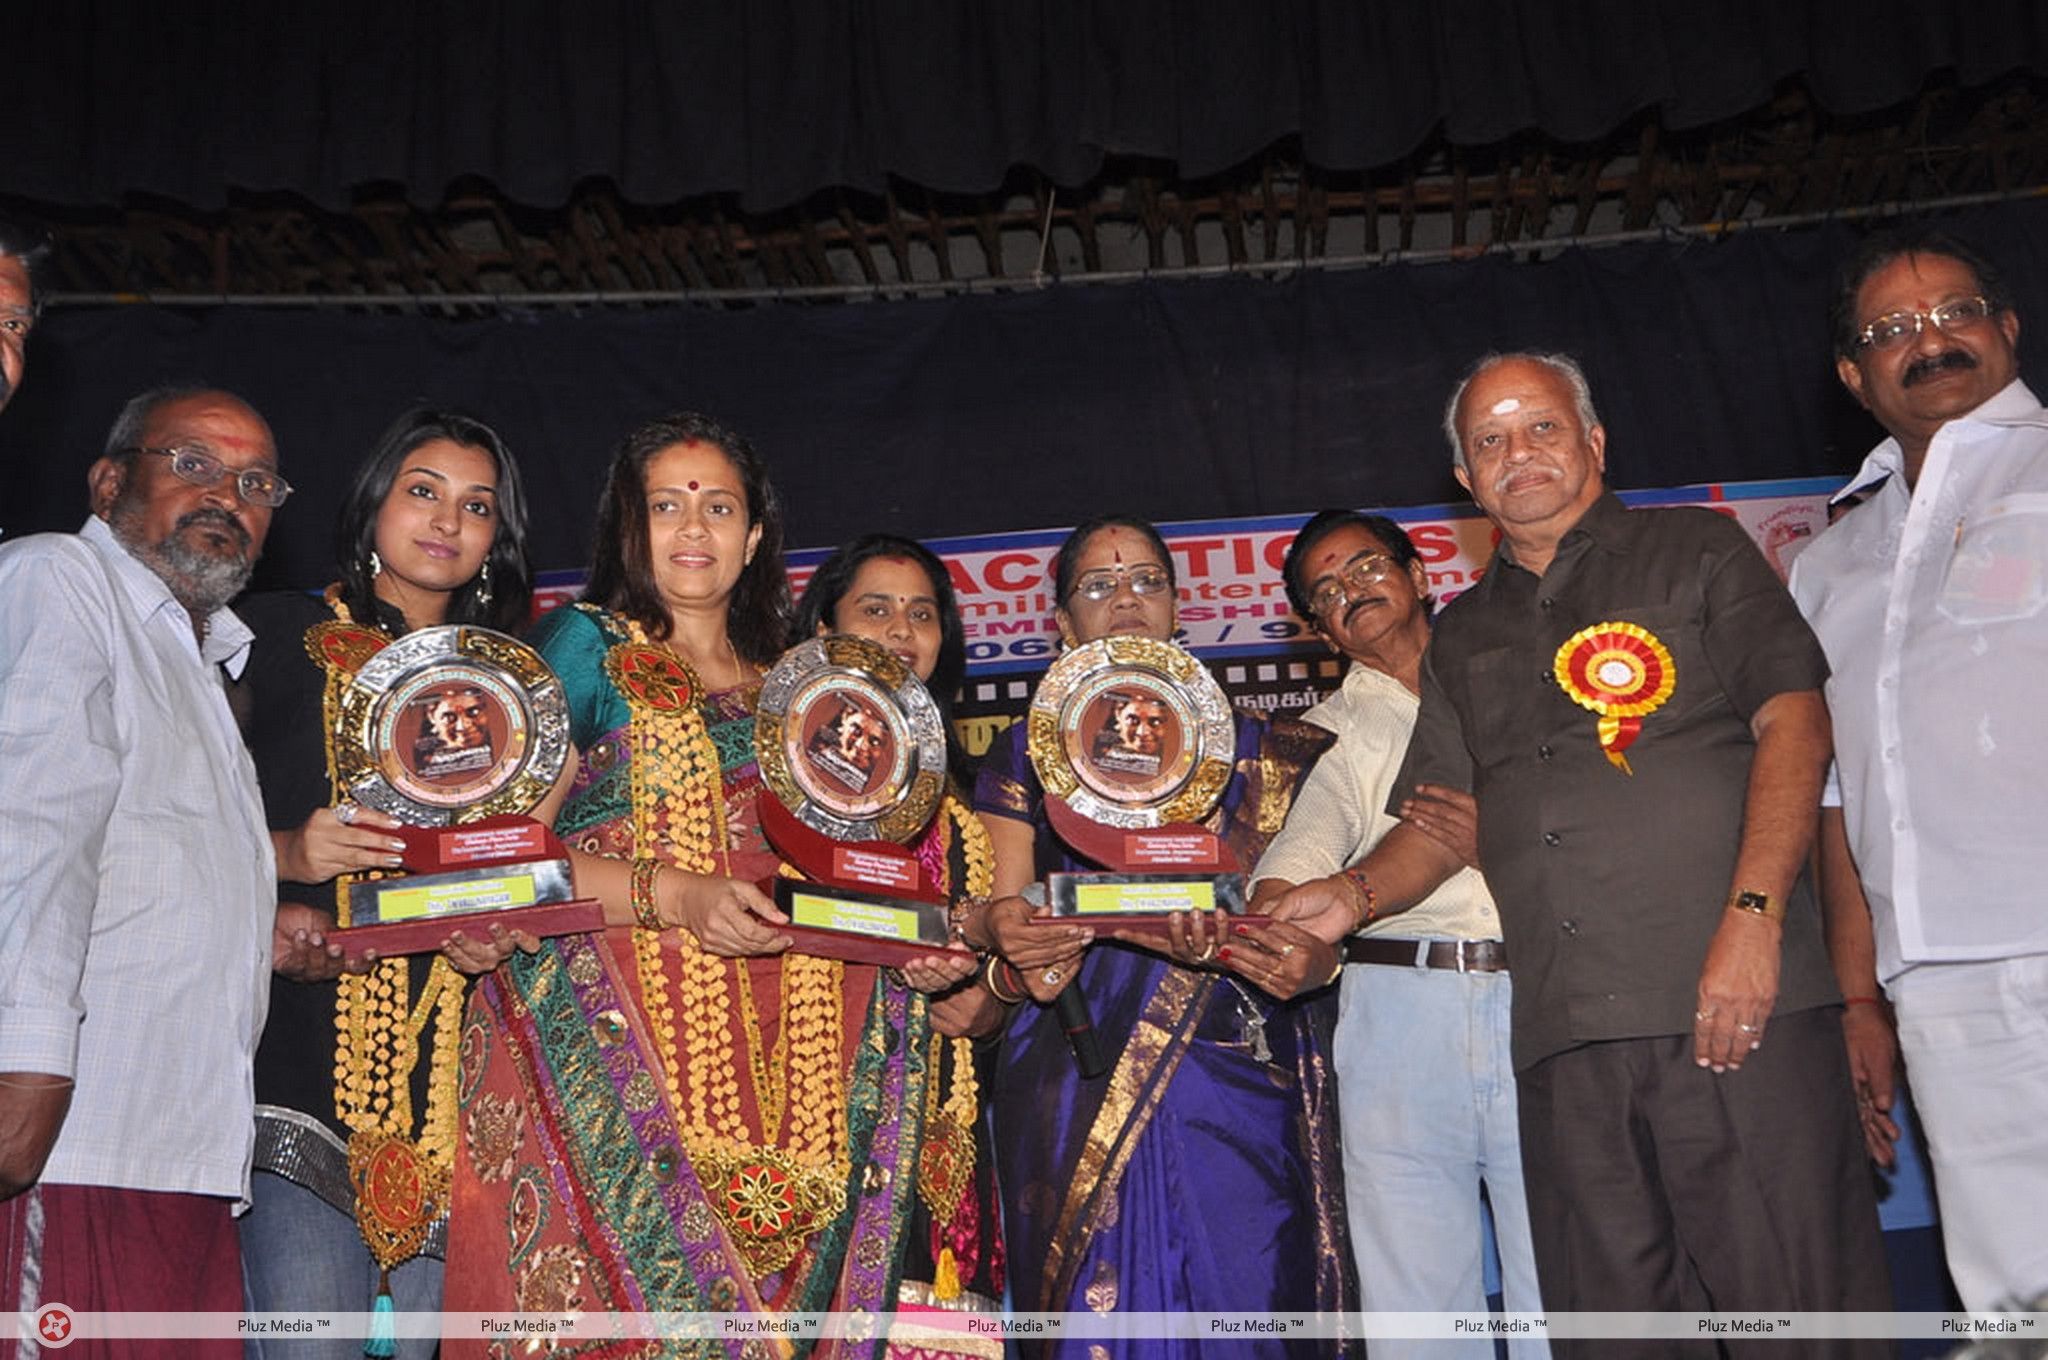 Aarohanam Film Felicitated Event Stills | Picture 326634